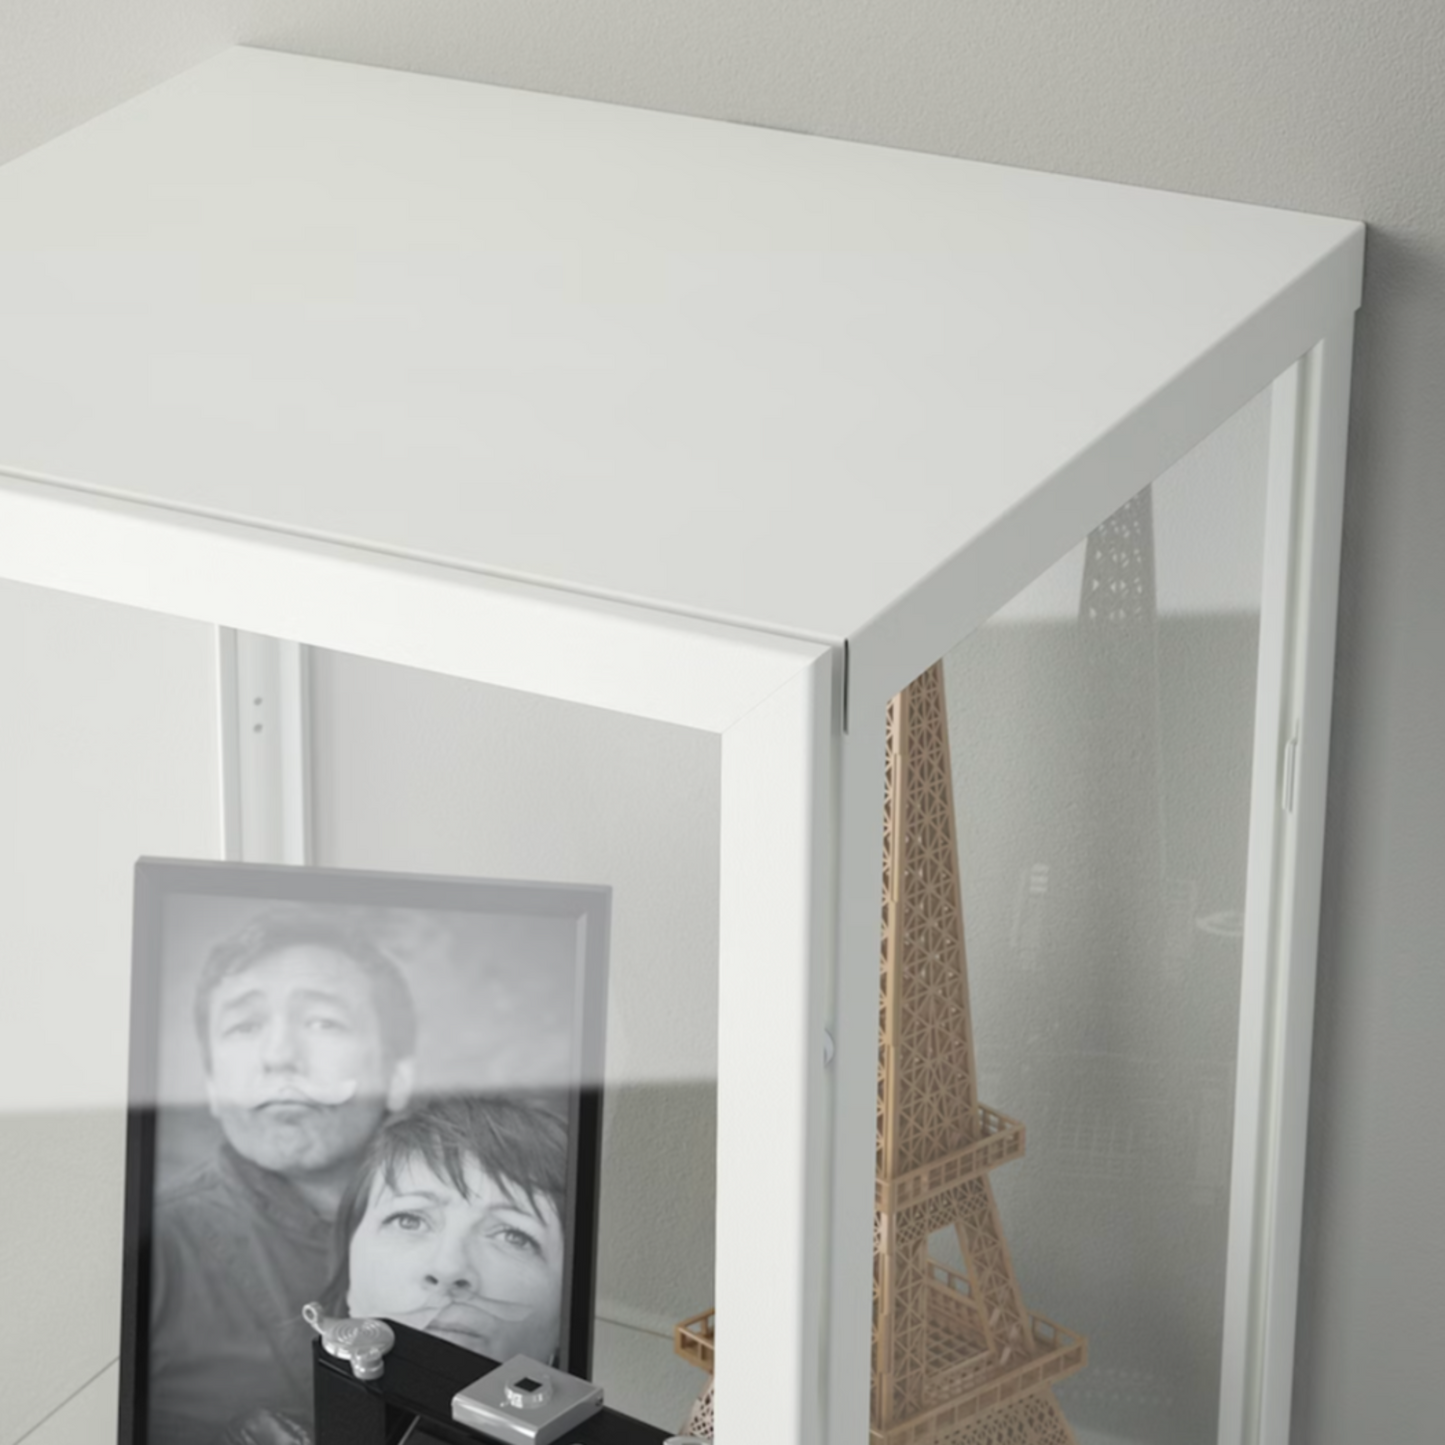 Ikea Blåliden Glass-Door Cabinet, White, 35x32x151cm (8884395868447)